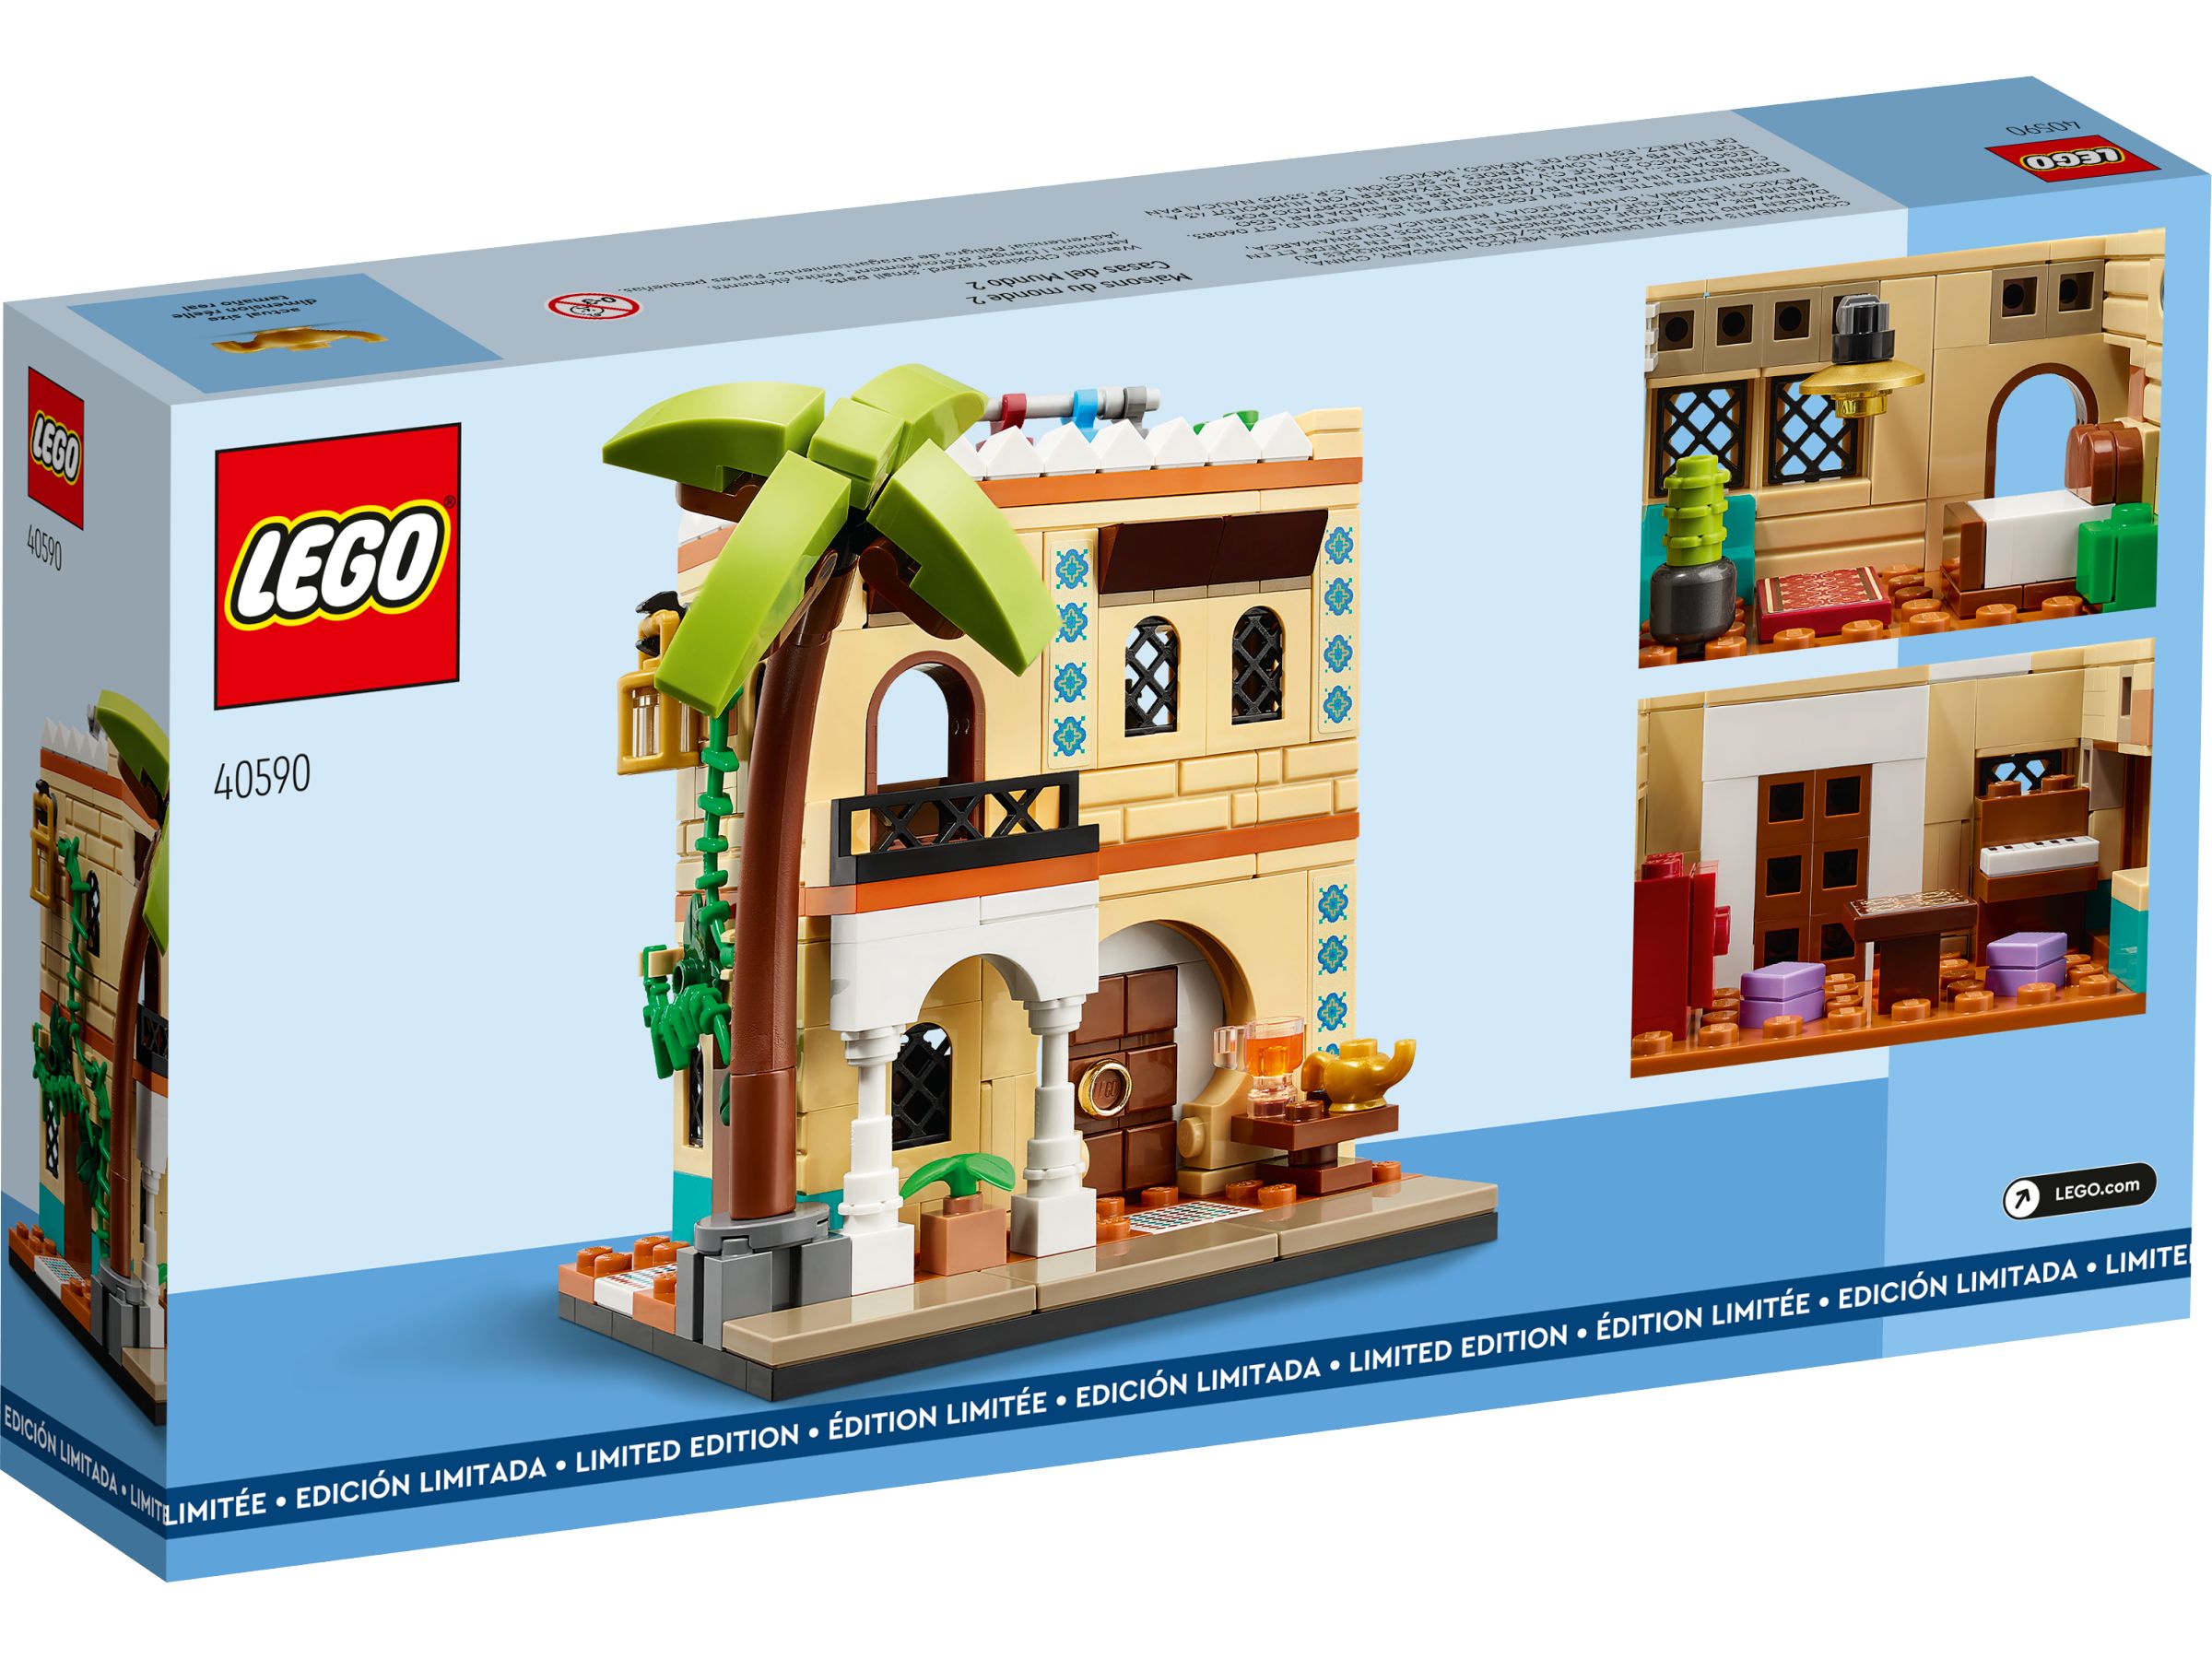 LEGO Promotional 40590 Häuser der Welt 2 LEGO_40590_alt2.jpg